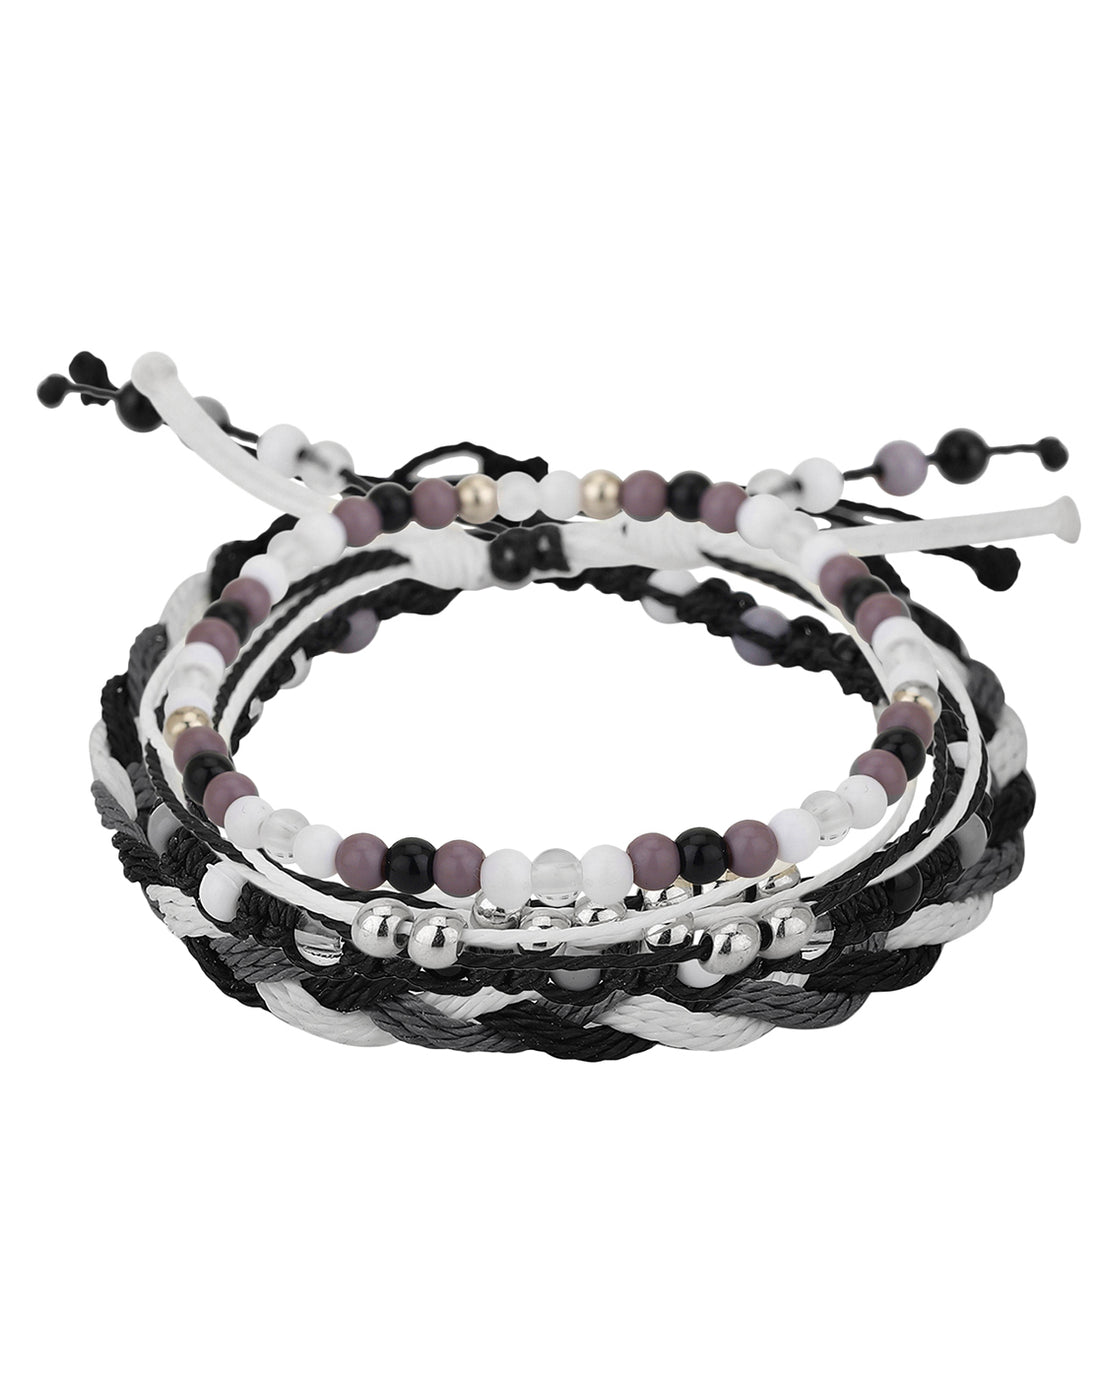 Carlton London Set Of 4 Beaded Bracelet For Women